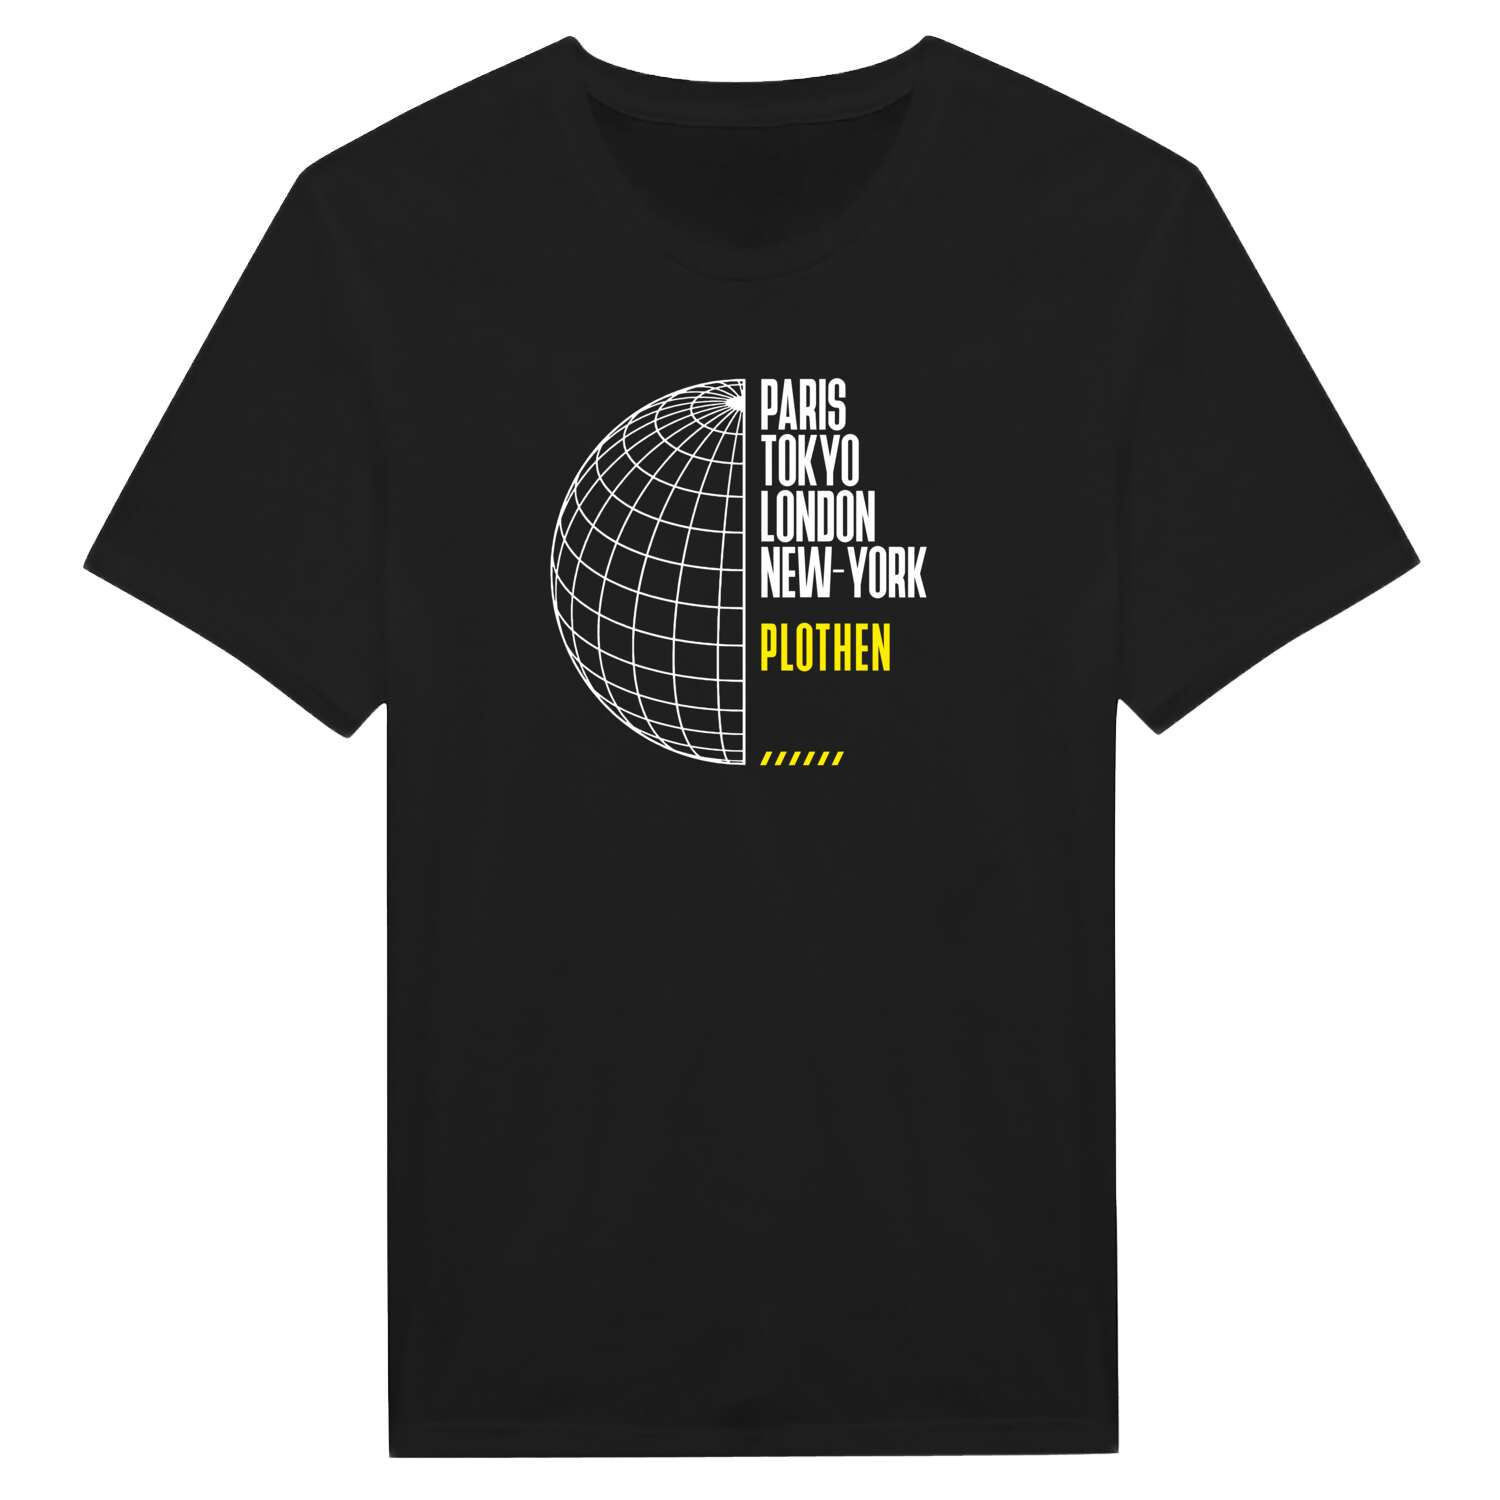 Plothen T-Shirt »Paris Tokyo London«